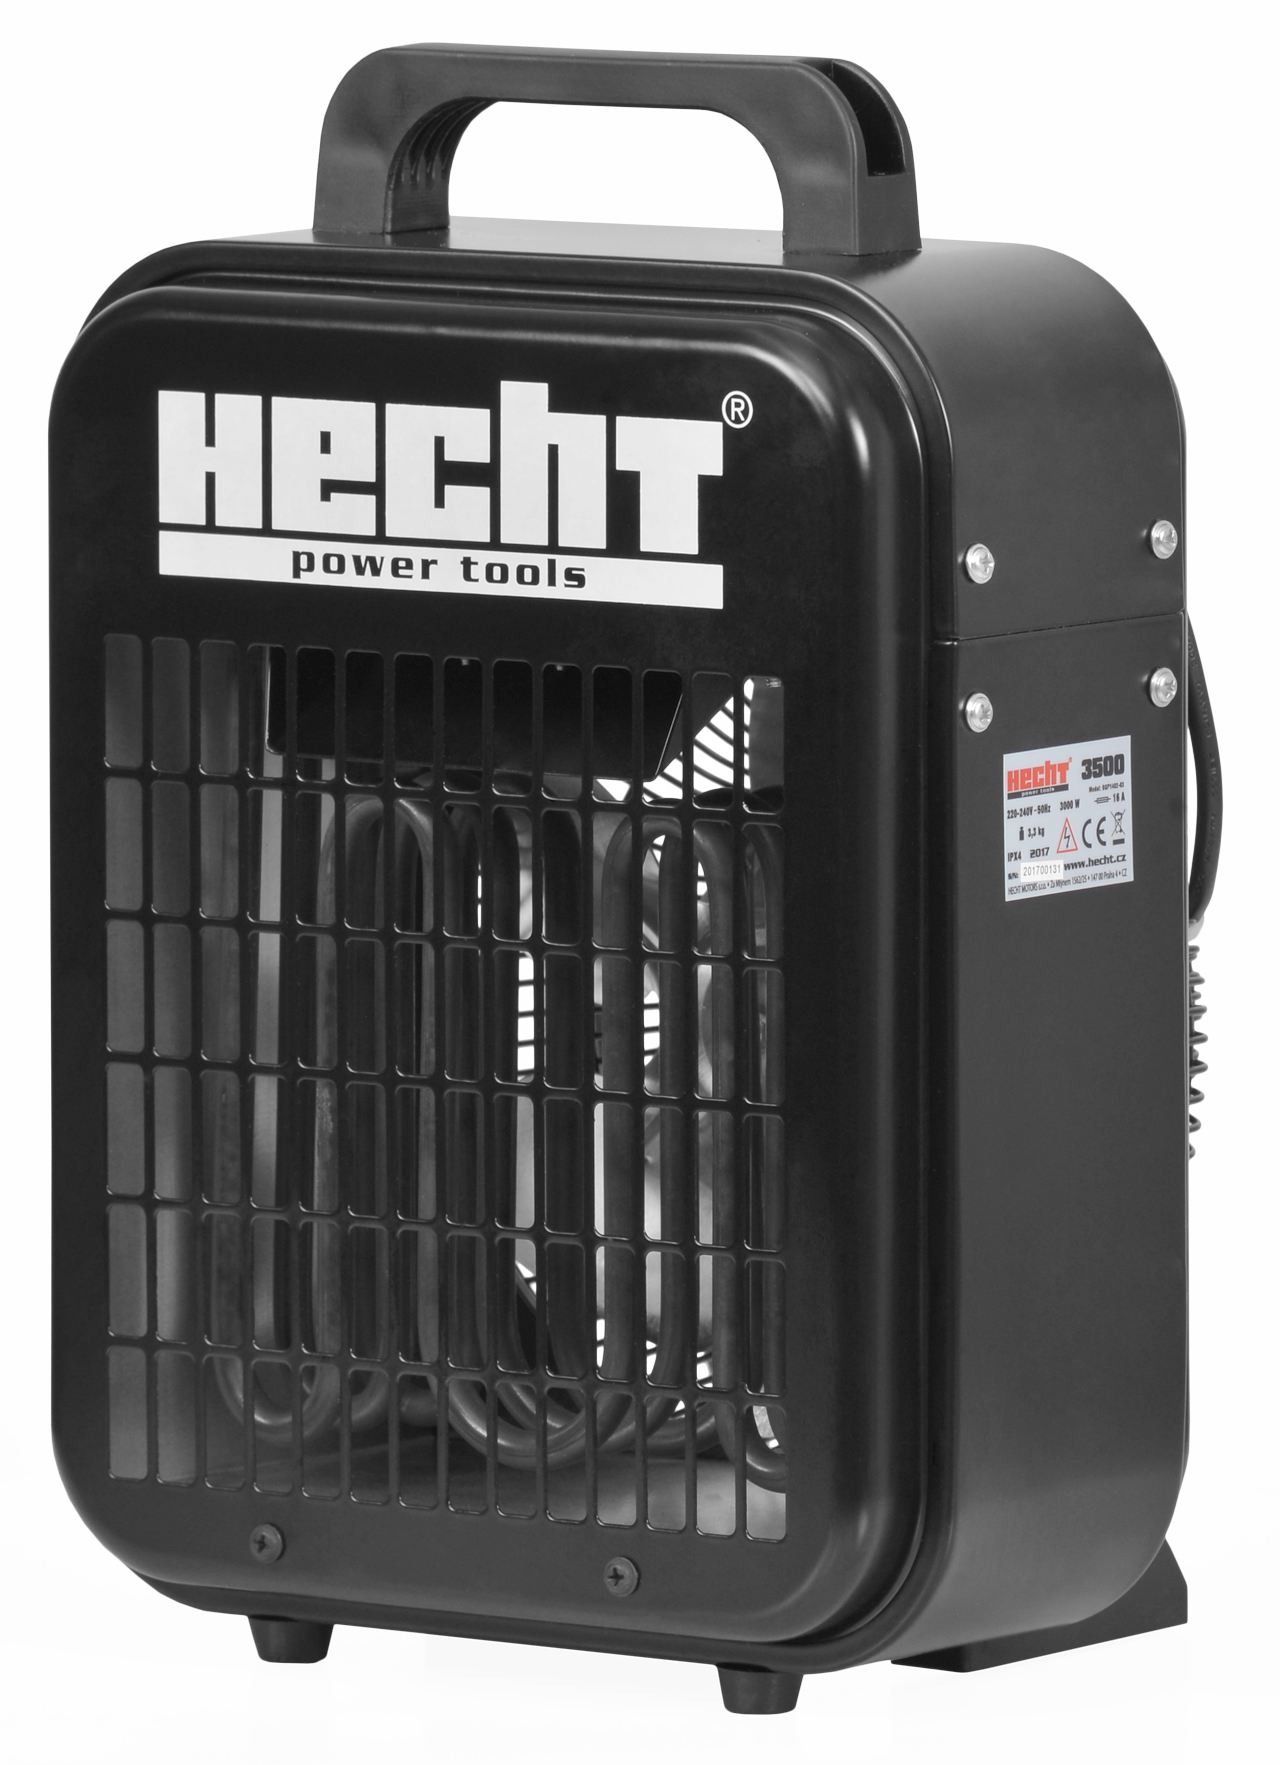 HECHT 3500 - přímotop s ventilátorem a termostatem